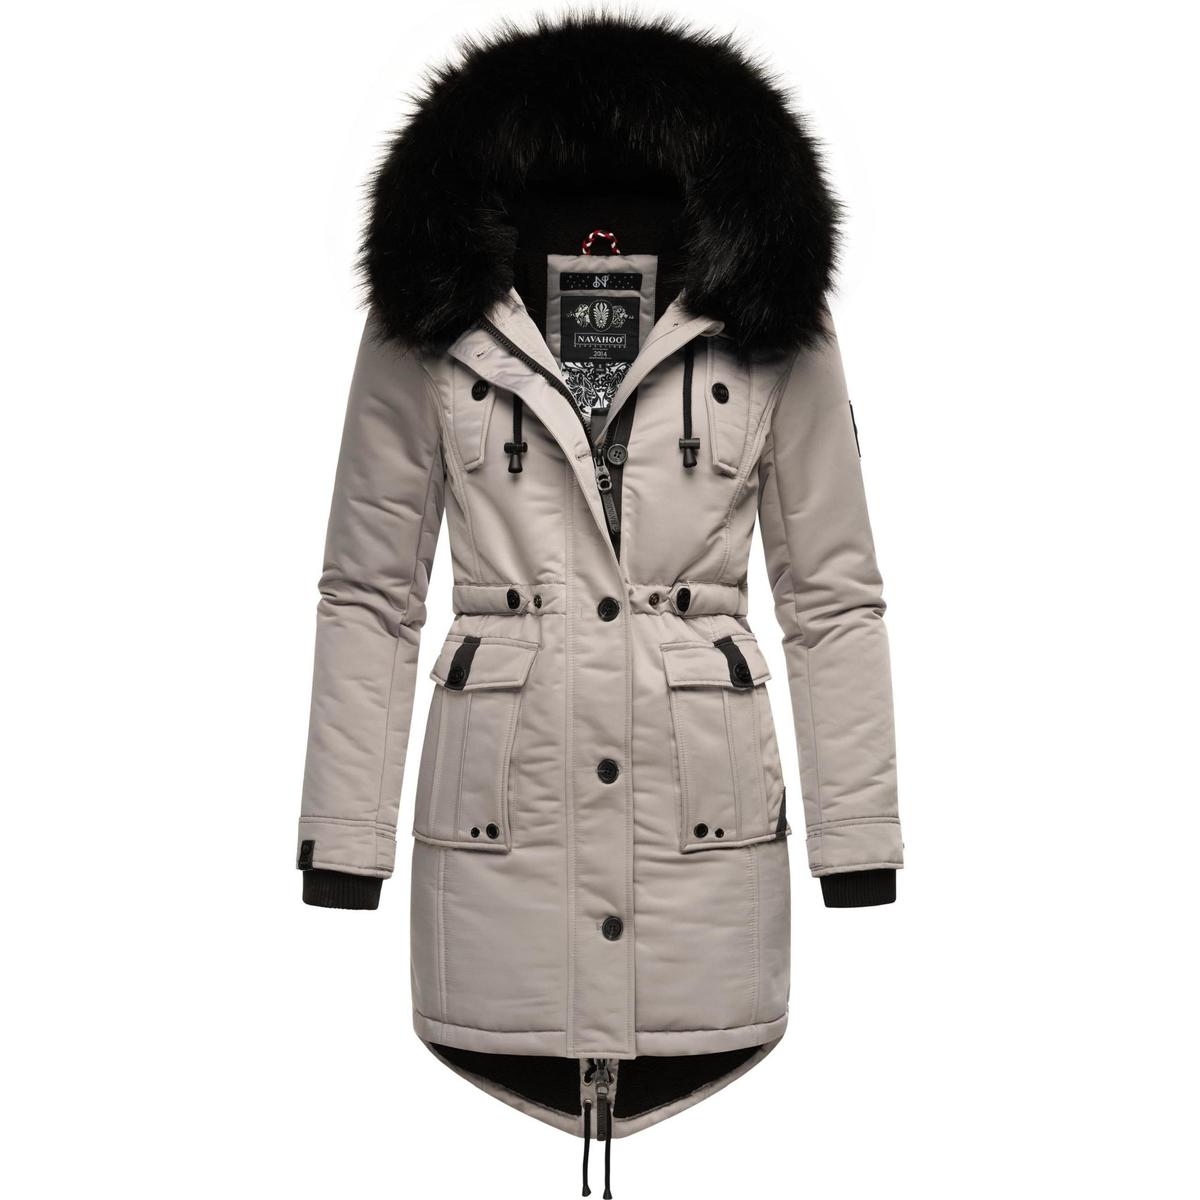 Kleidung Damen Wintermantel 134,95 - Prc Luluna € Grau Mäntel Navahoo